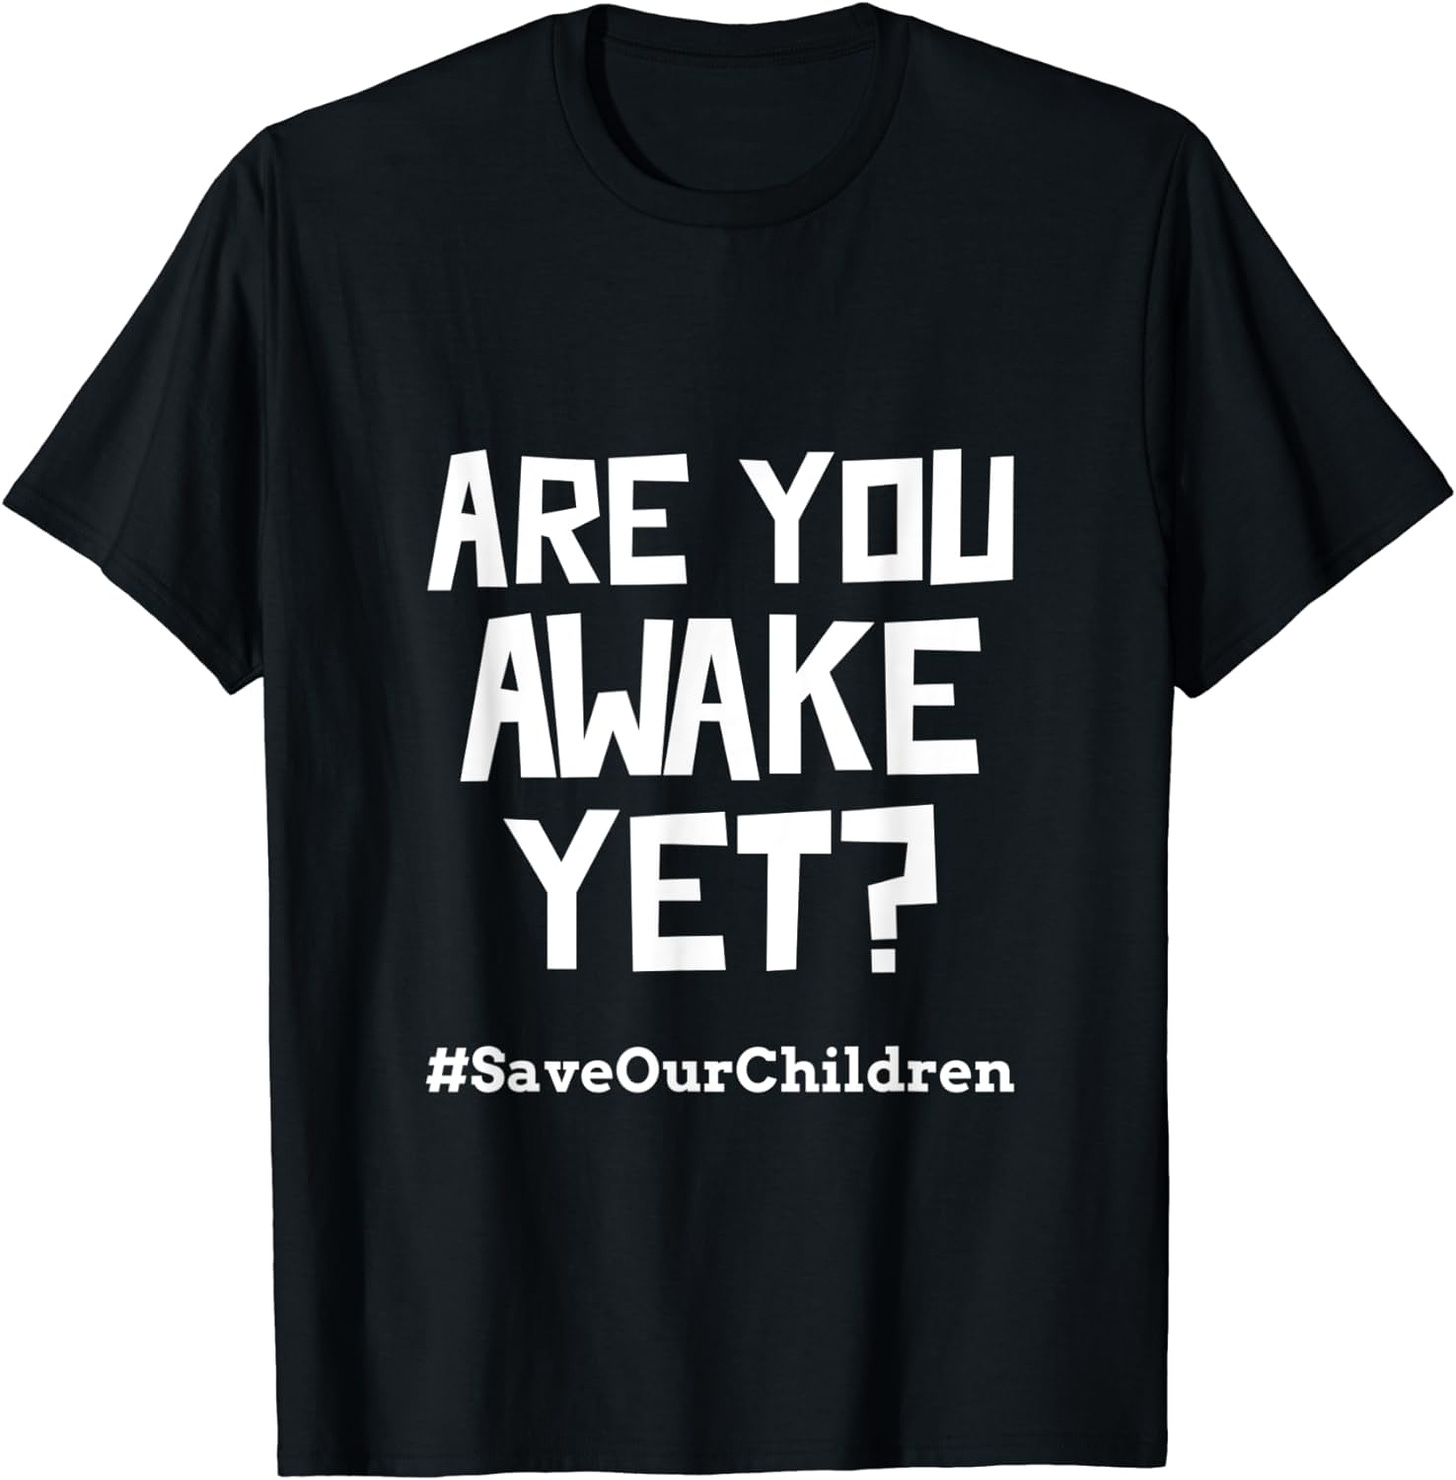 Amazon.com: Are You Awake Yet? - #SaveOurChildren T-Shirt : Clothing ...